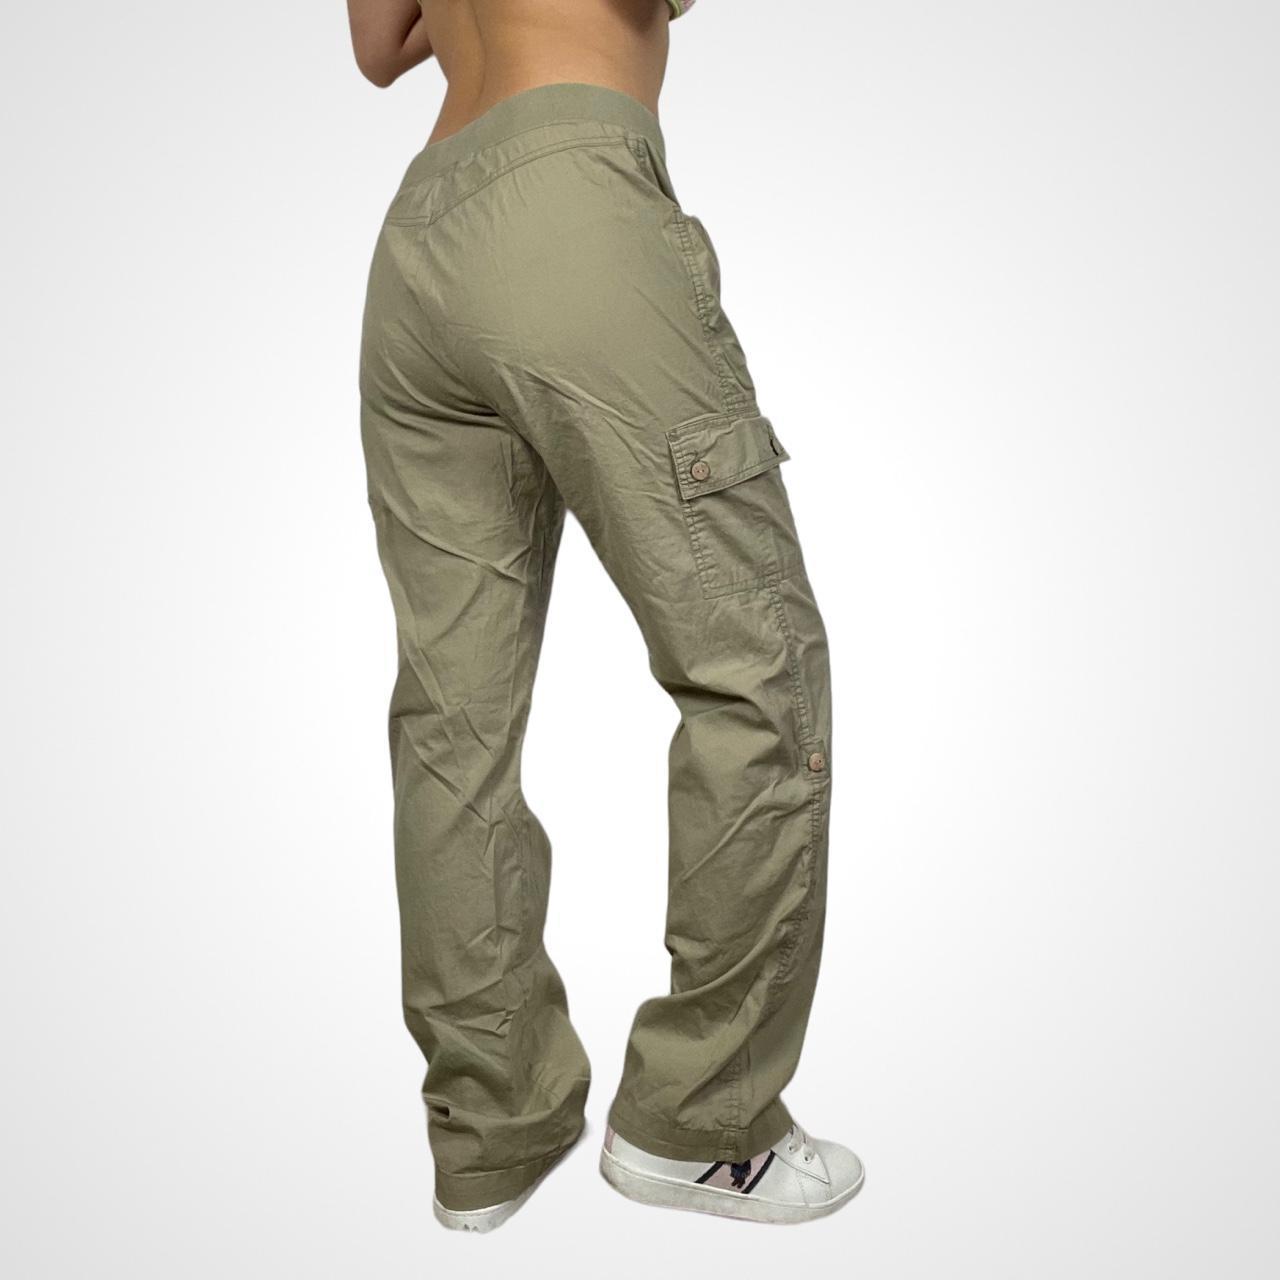 y2k low rise cargo pants in brown tan fits low to... - Depop